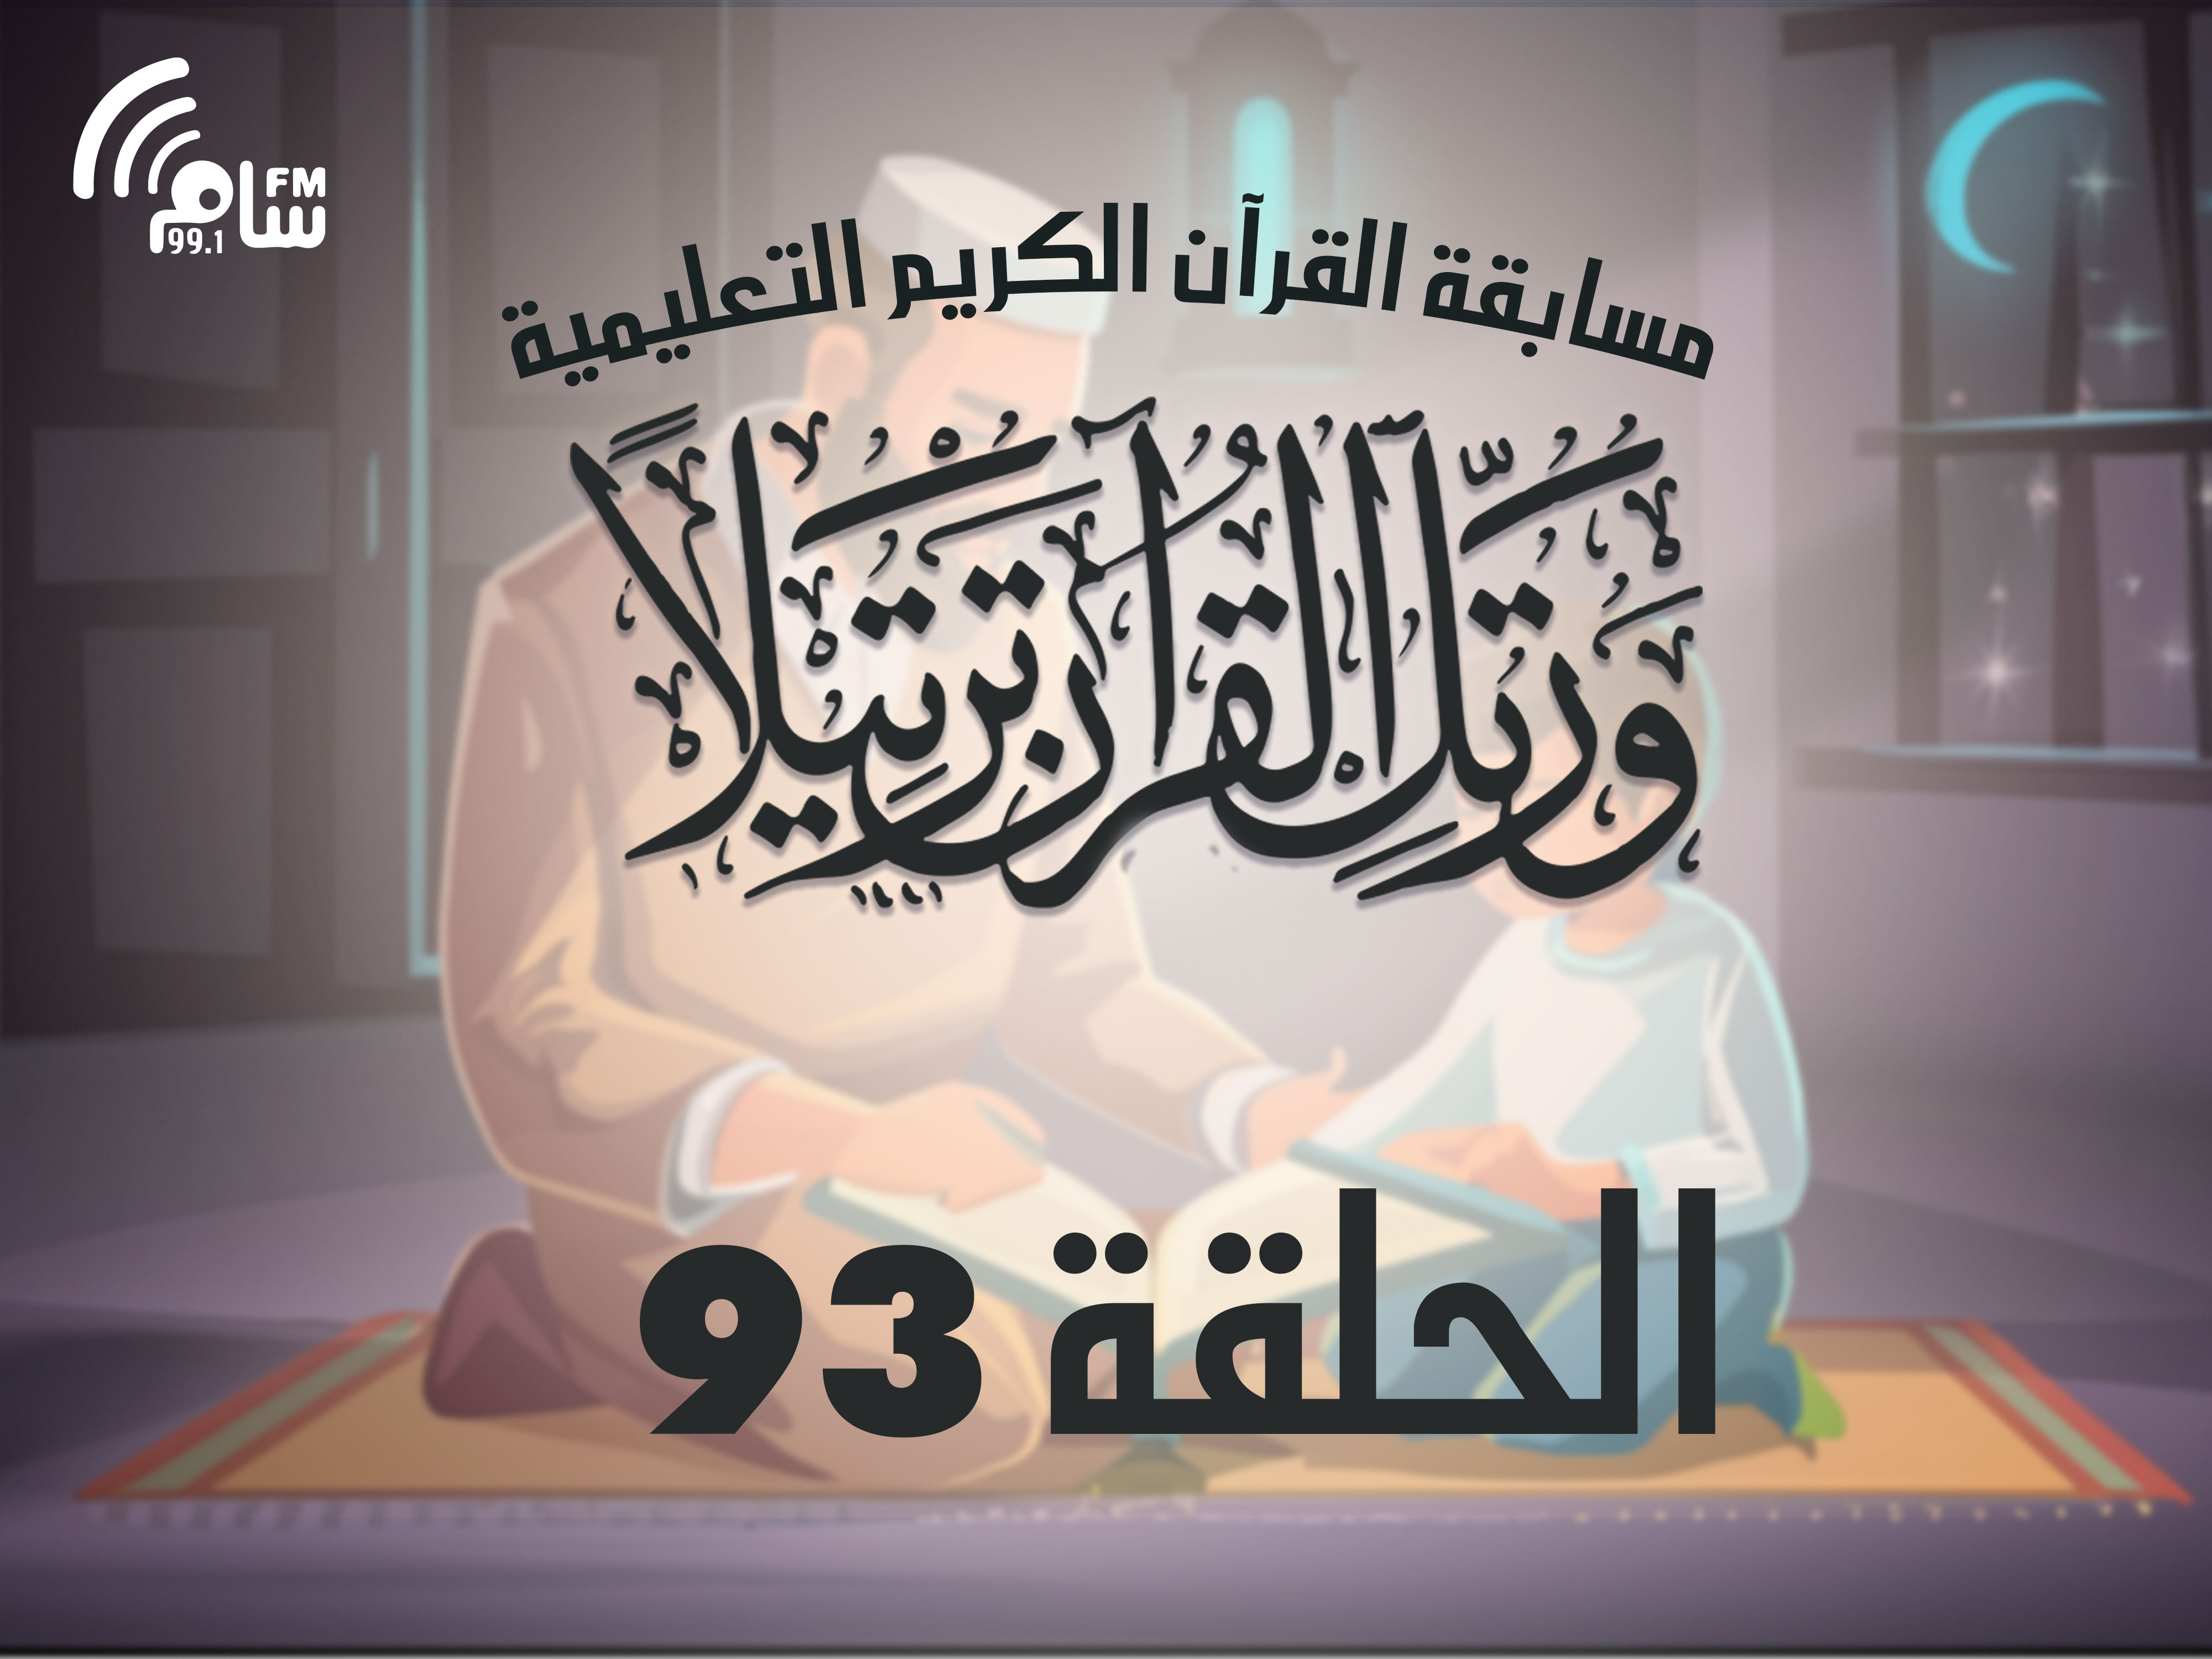 مسابقة القرآن الكريم الحلقة 93 انتاج اذاعة اسام اف ام